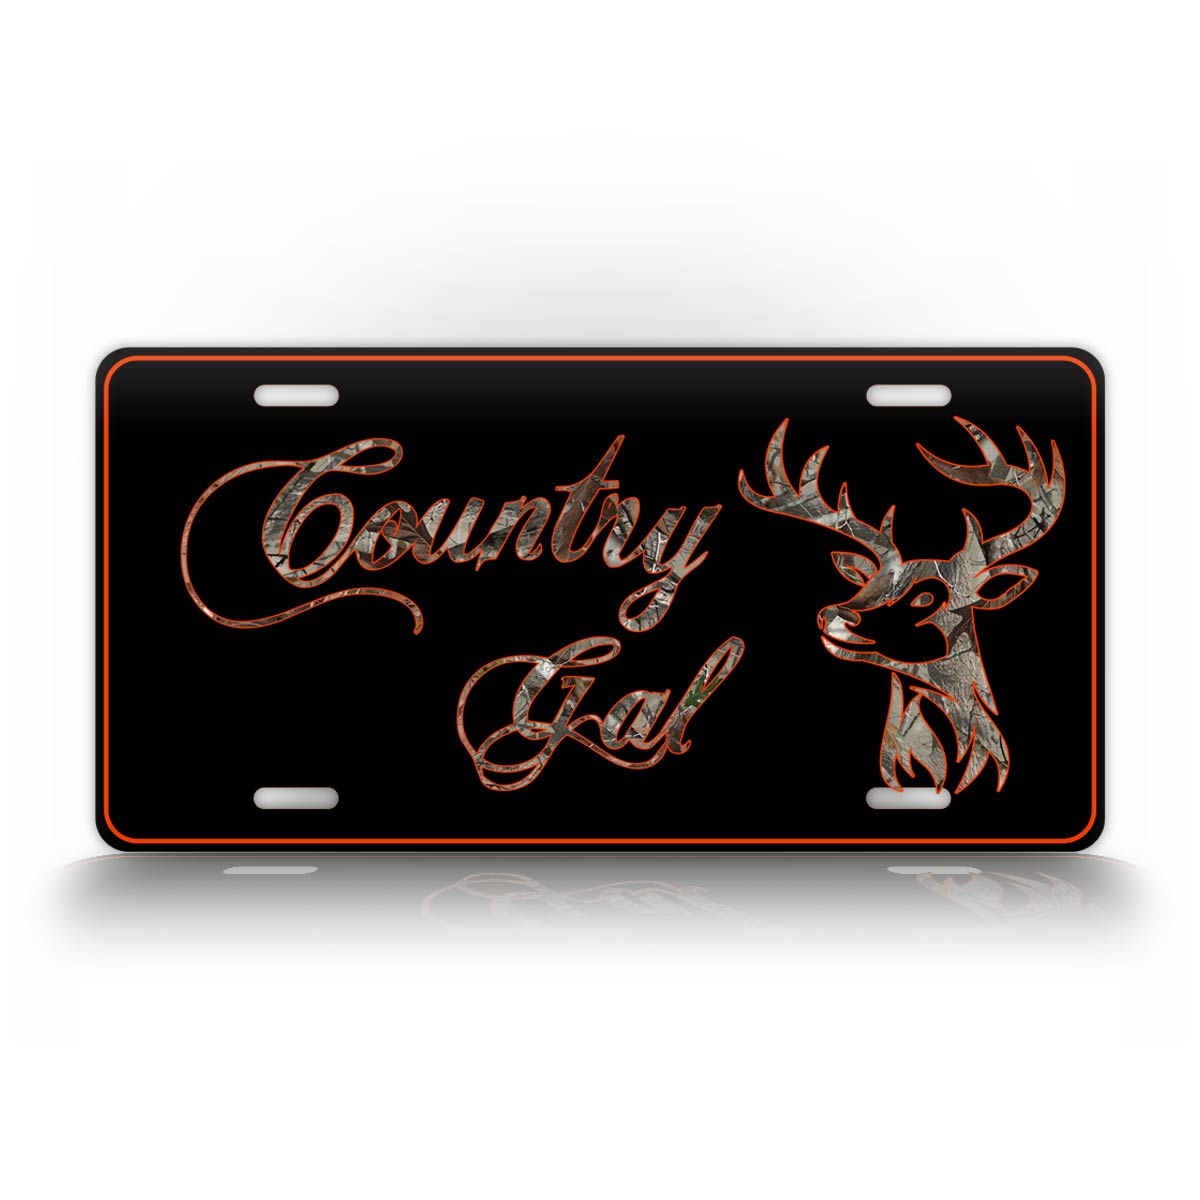 Country Gal Deer Head License Plate